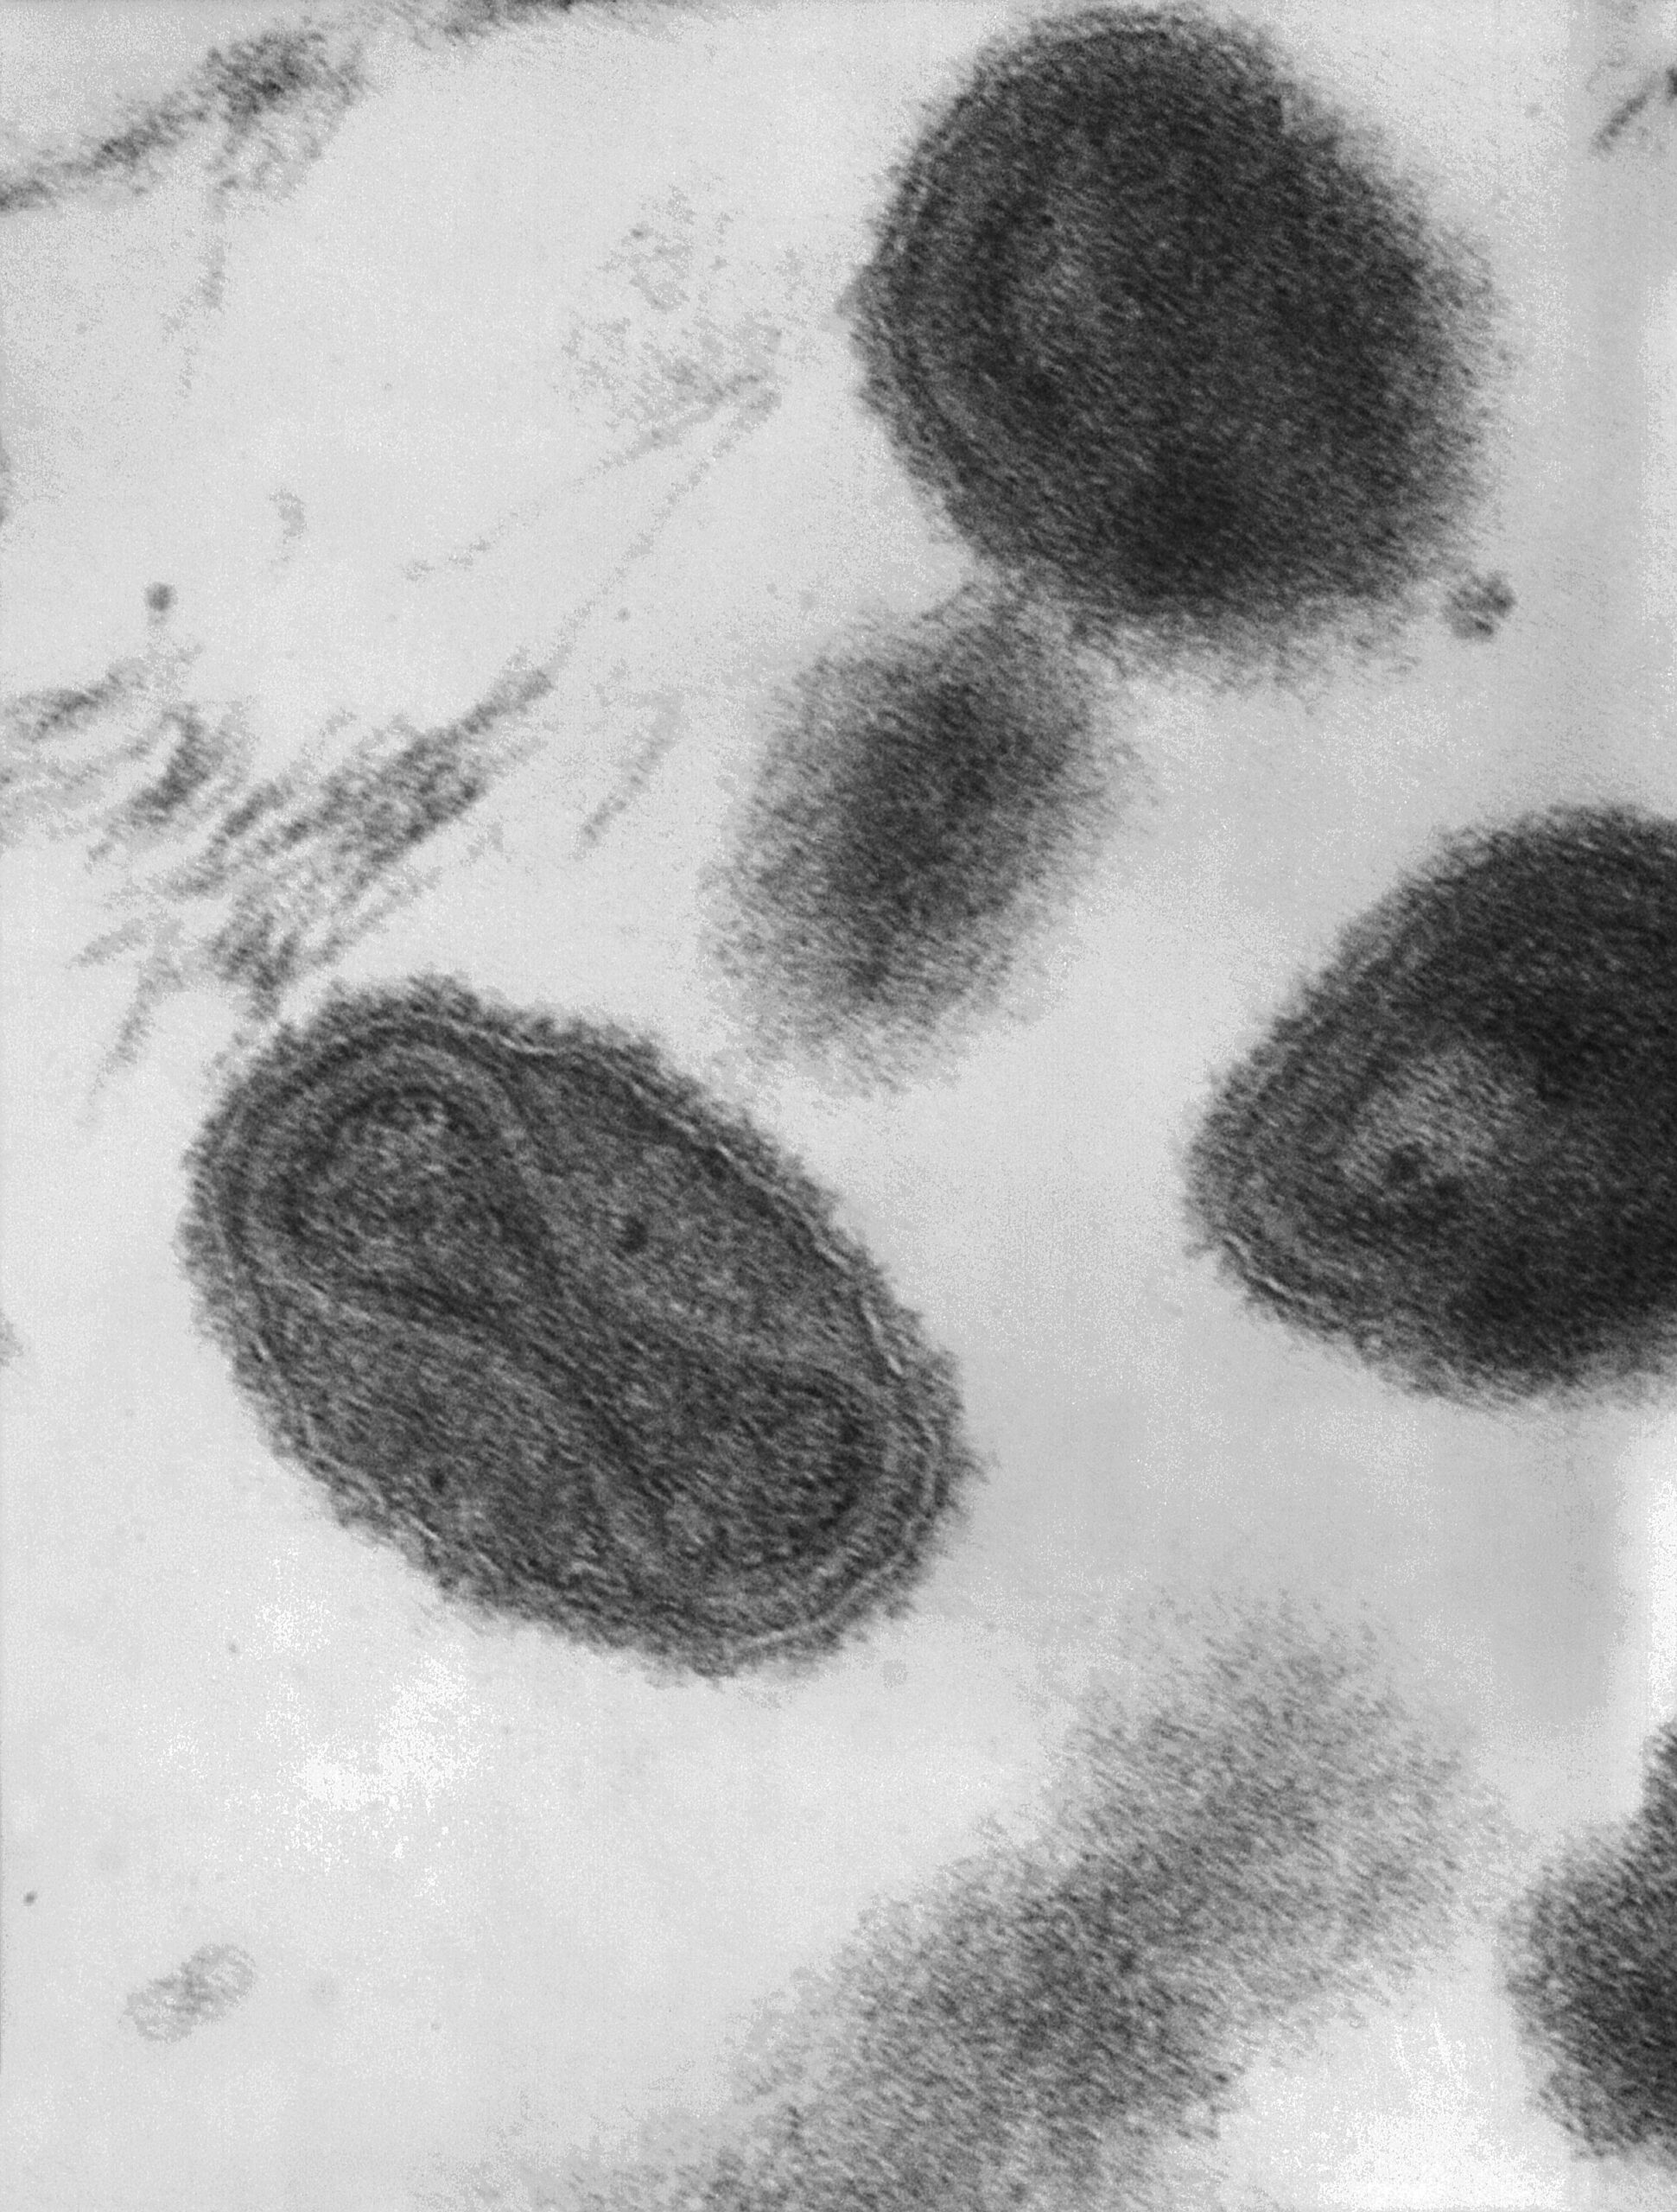 וירוס אבעבועות שחורות בכבשים ועיזים: מאפייני הפתוגן, אמצעי בקרה ומניעה